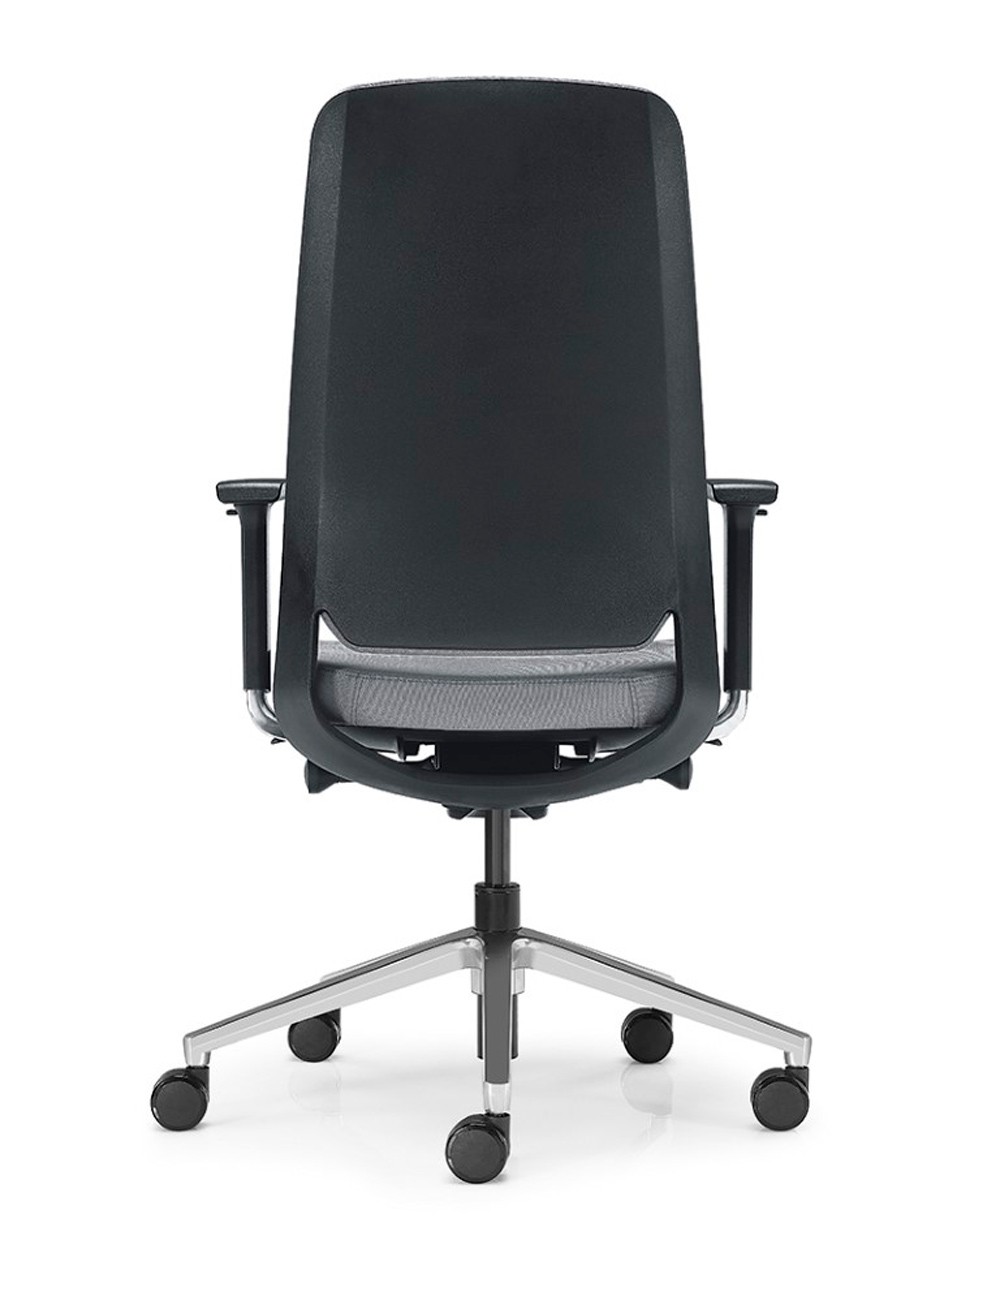 Conforto e estilo na sua mesa de trabalho a cadeira de escritório Silk Low é a escolha perfeita!